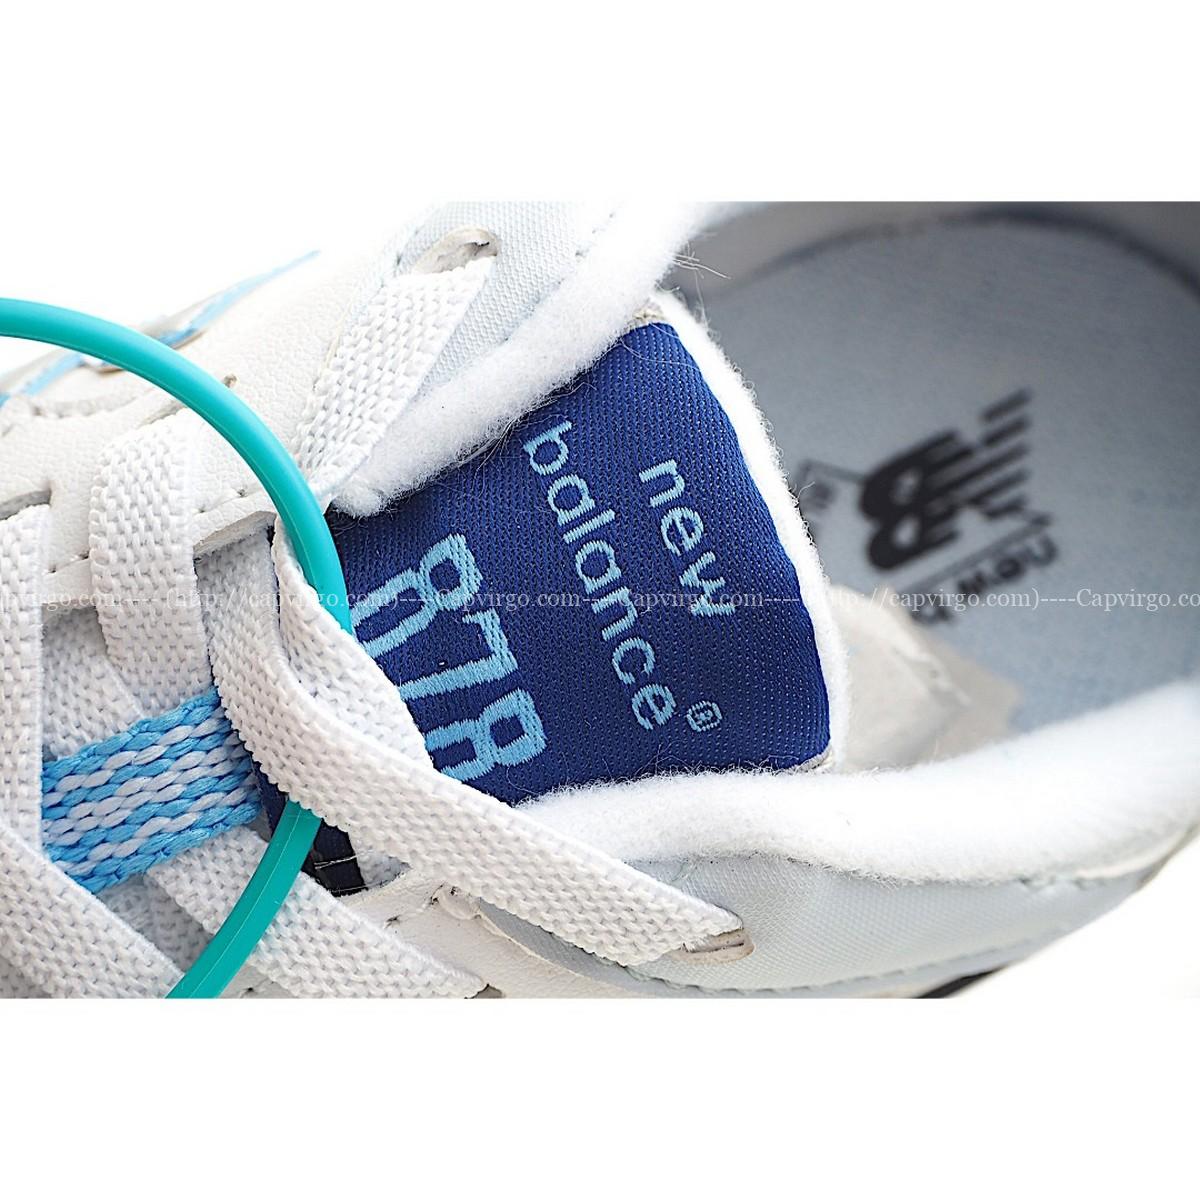 Giày chạy bộ trẻ em newbalance 878 - NB878 màu trắng xanh